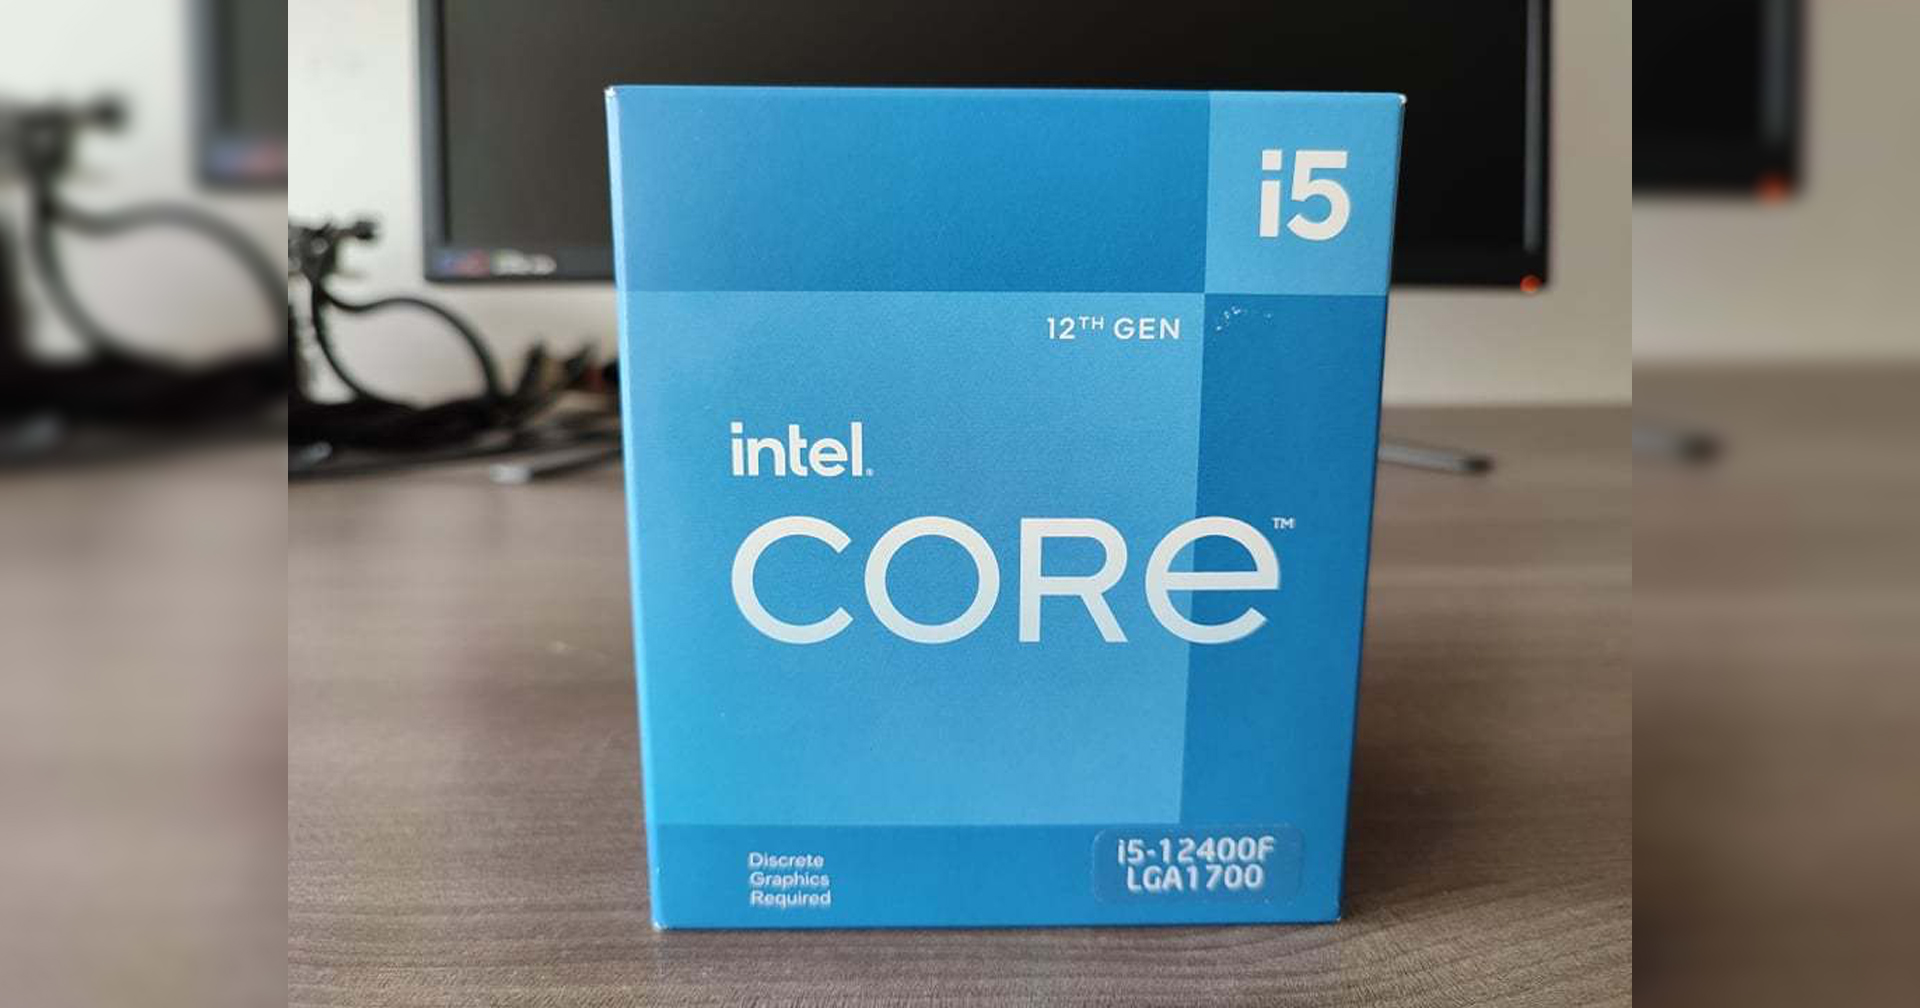 Intel Core i5-12400F หลุดออกมาวางขายหน้าร้านแล้วในเปรู